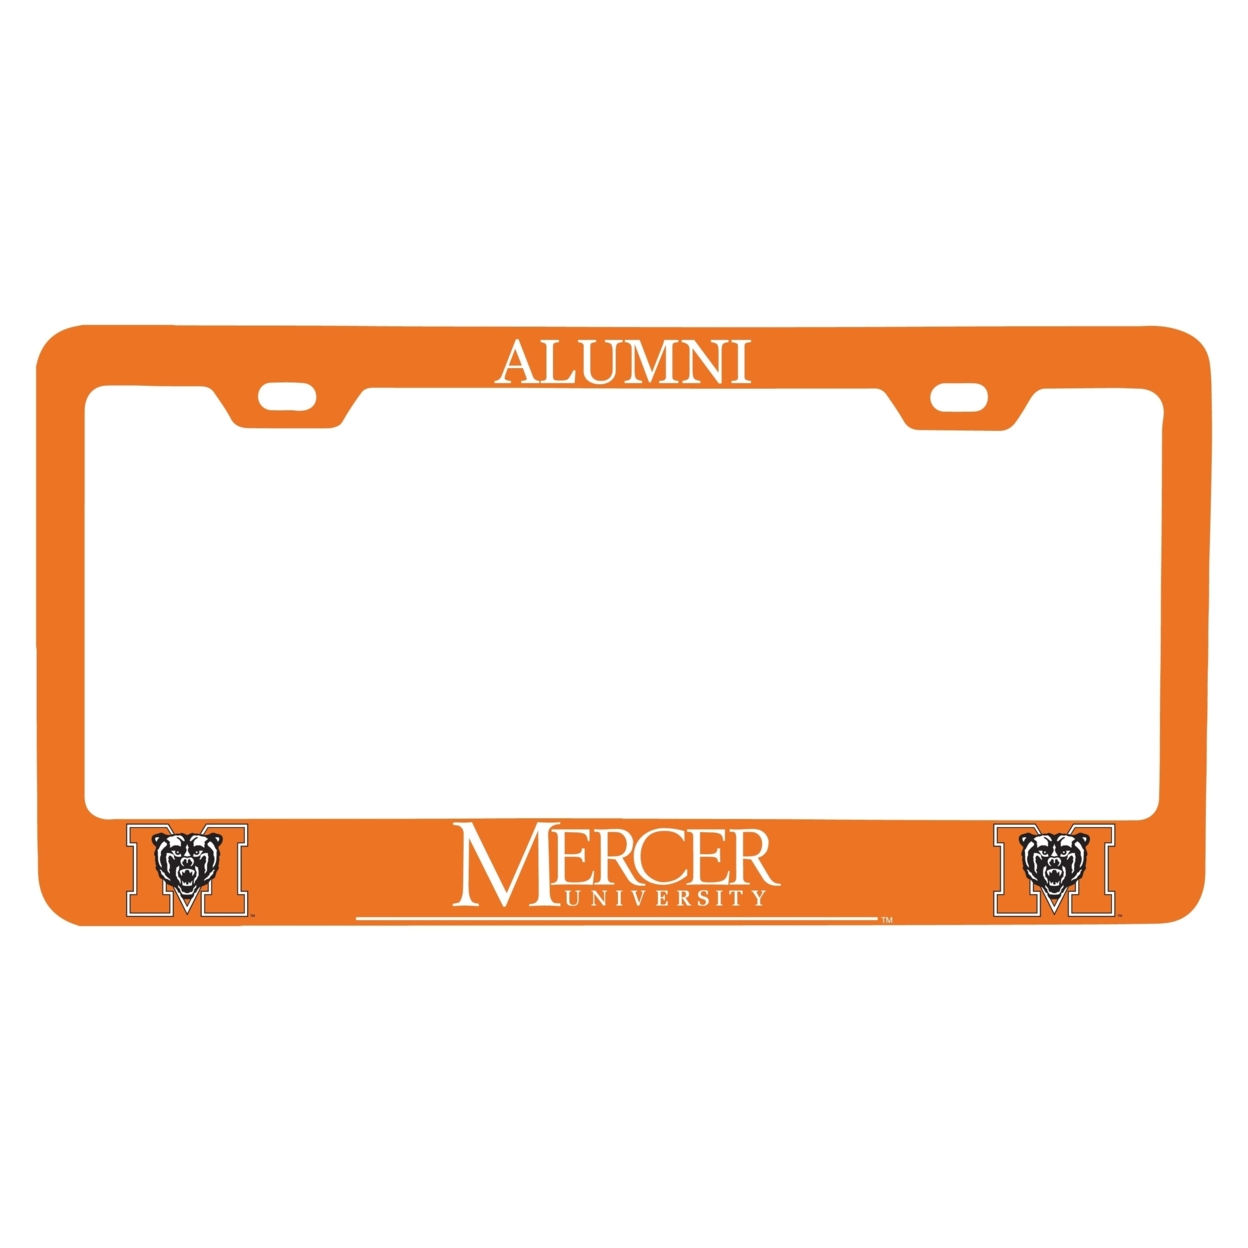 Mercer University Alumni License Plate Frame